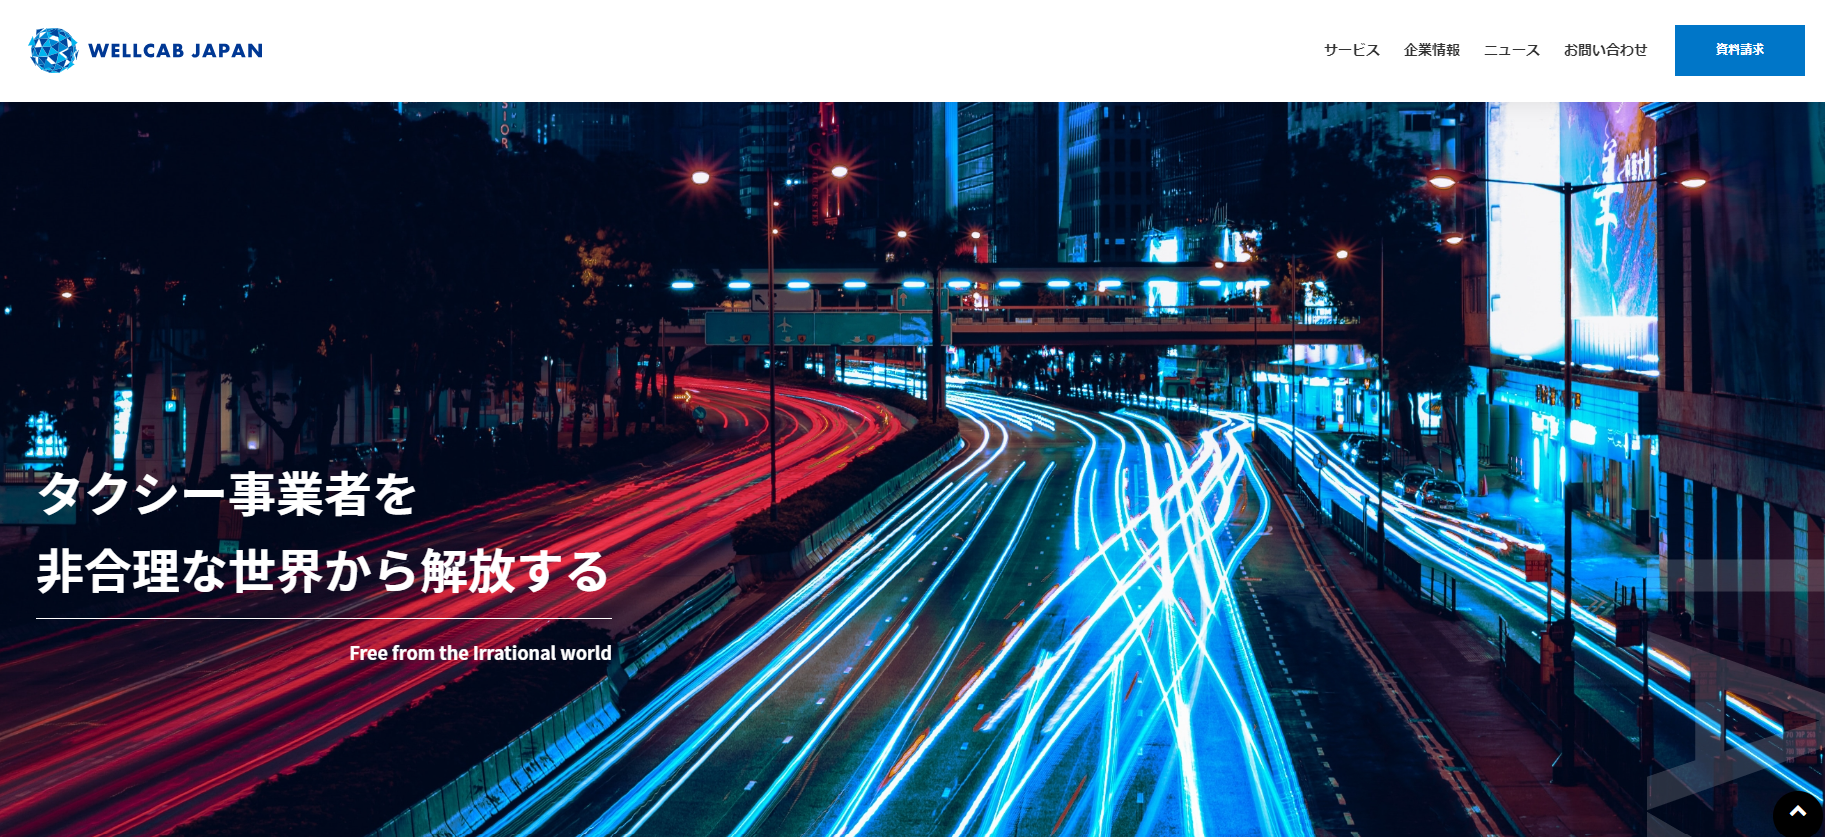 おすすめのタクシー運行管理システム<br>WELLCAB JAPAN株式会社「Cabriolet」ダウンロード資料ページ